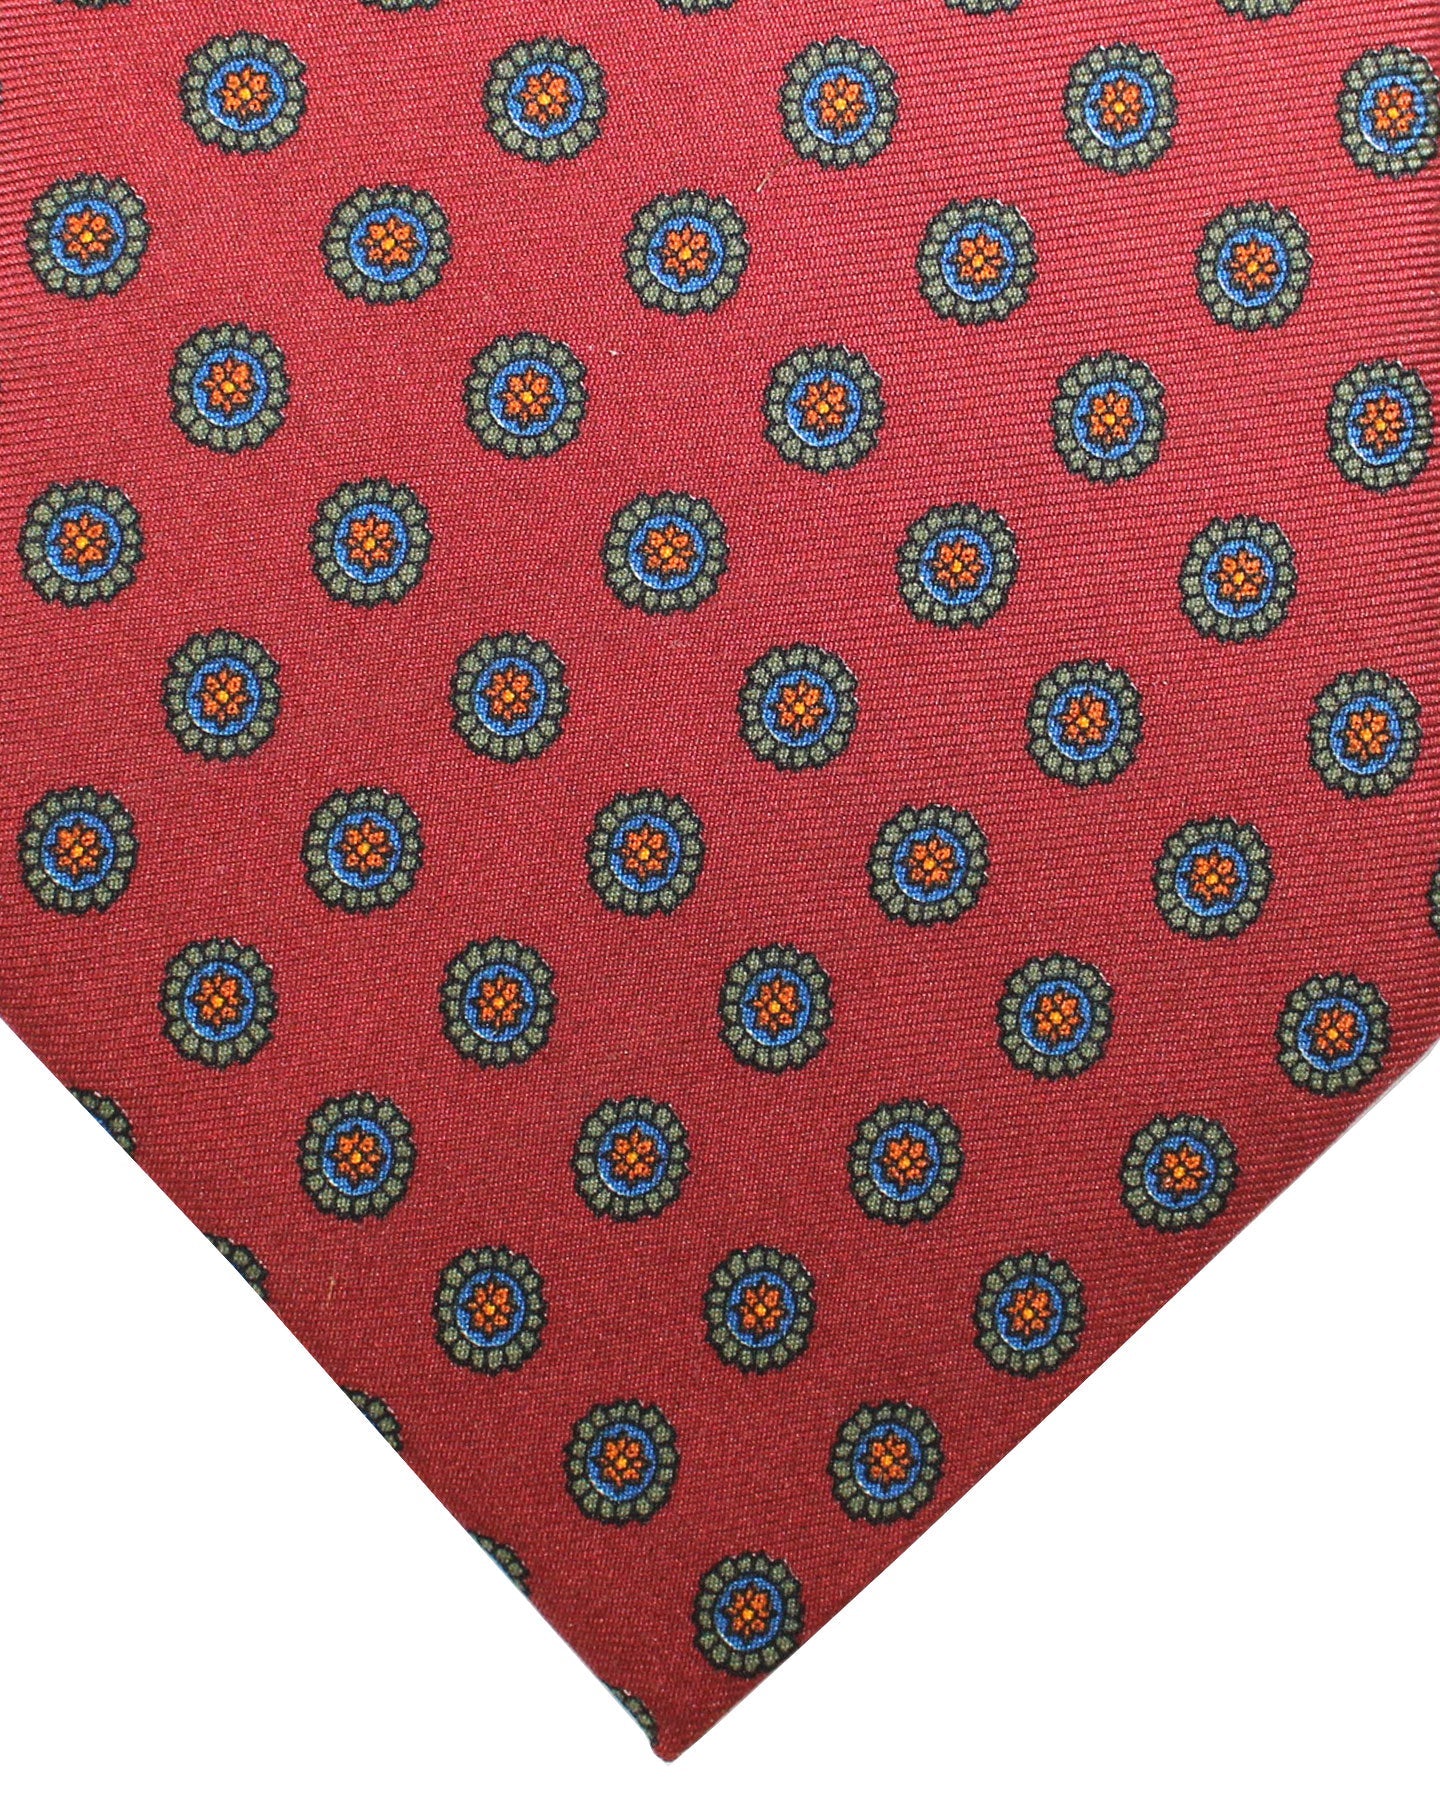 E. Marinella Tie Maroon Brown Green Medallions Design - Wide Necktie